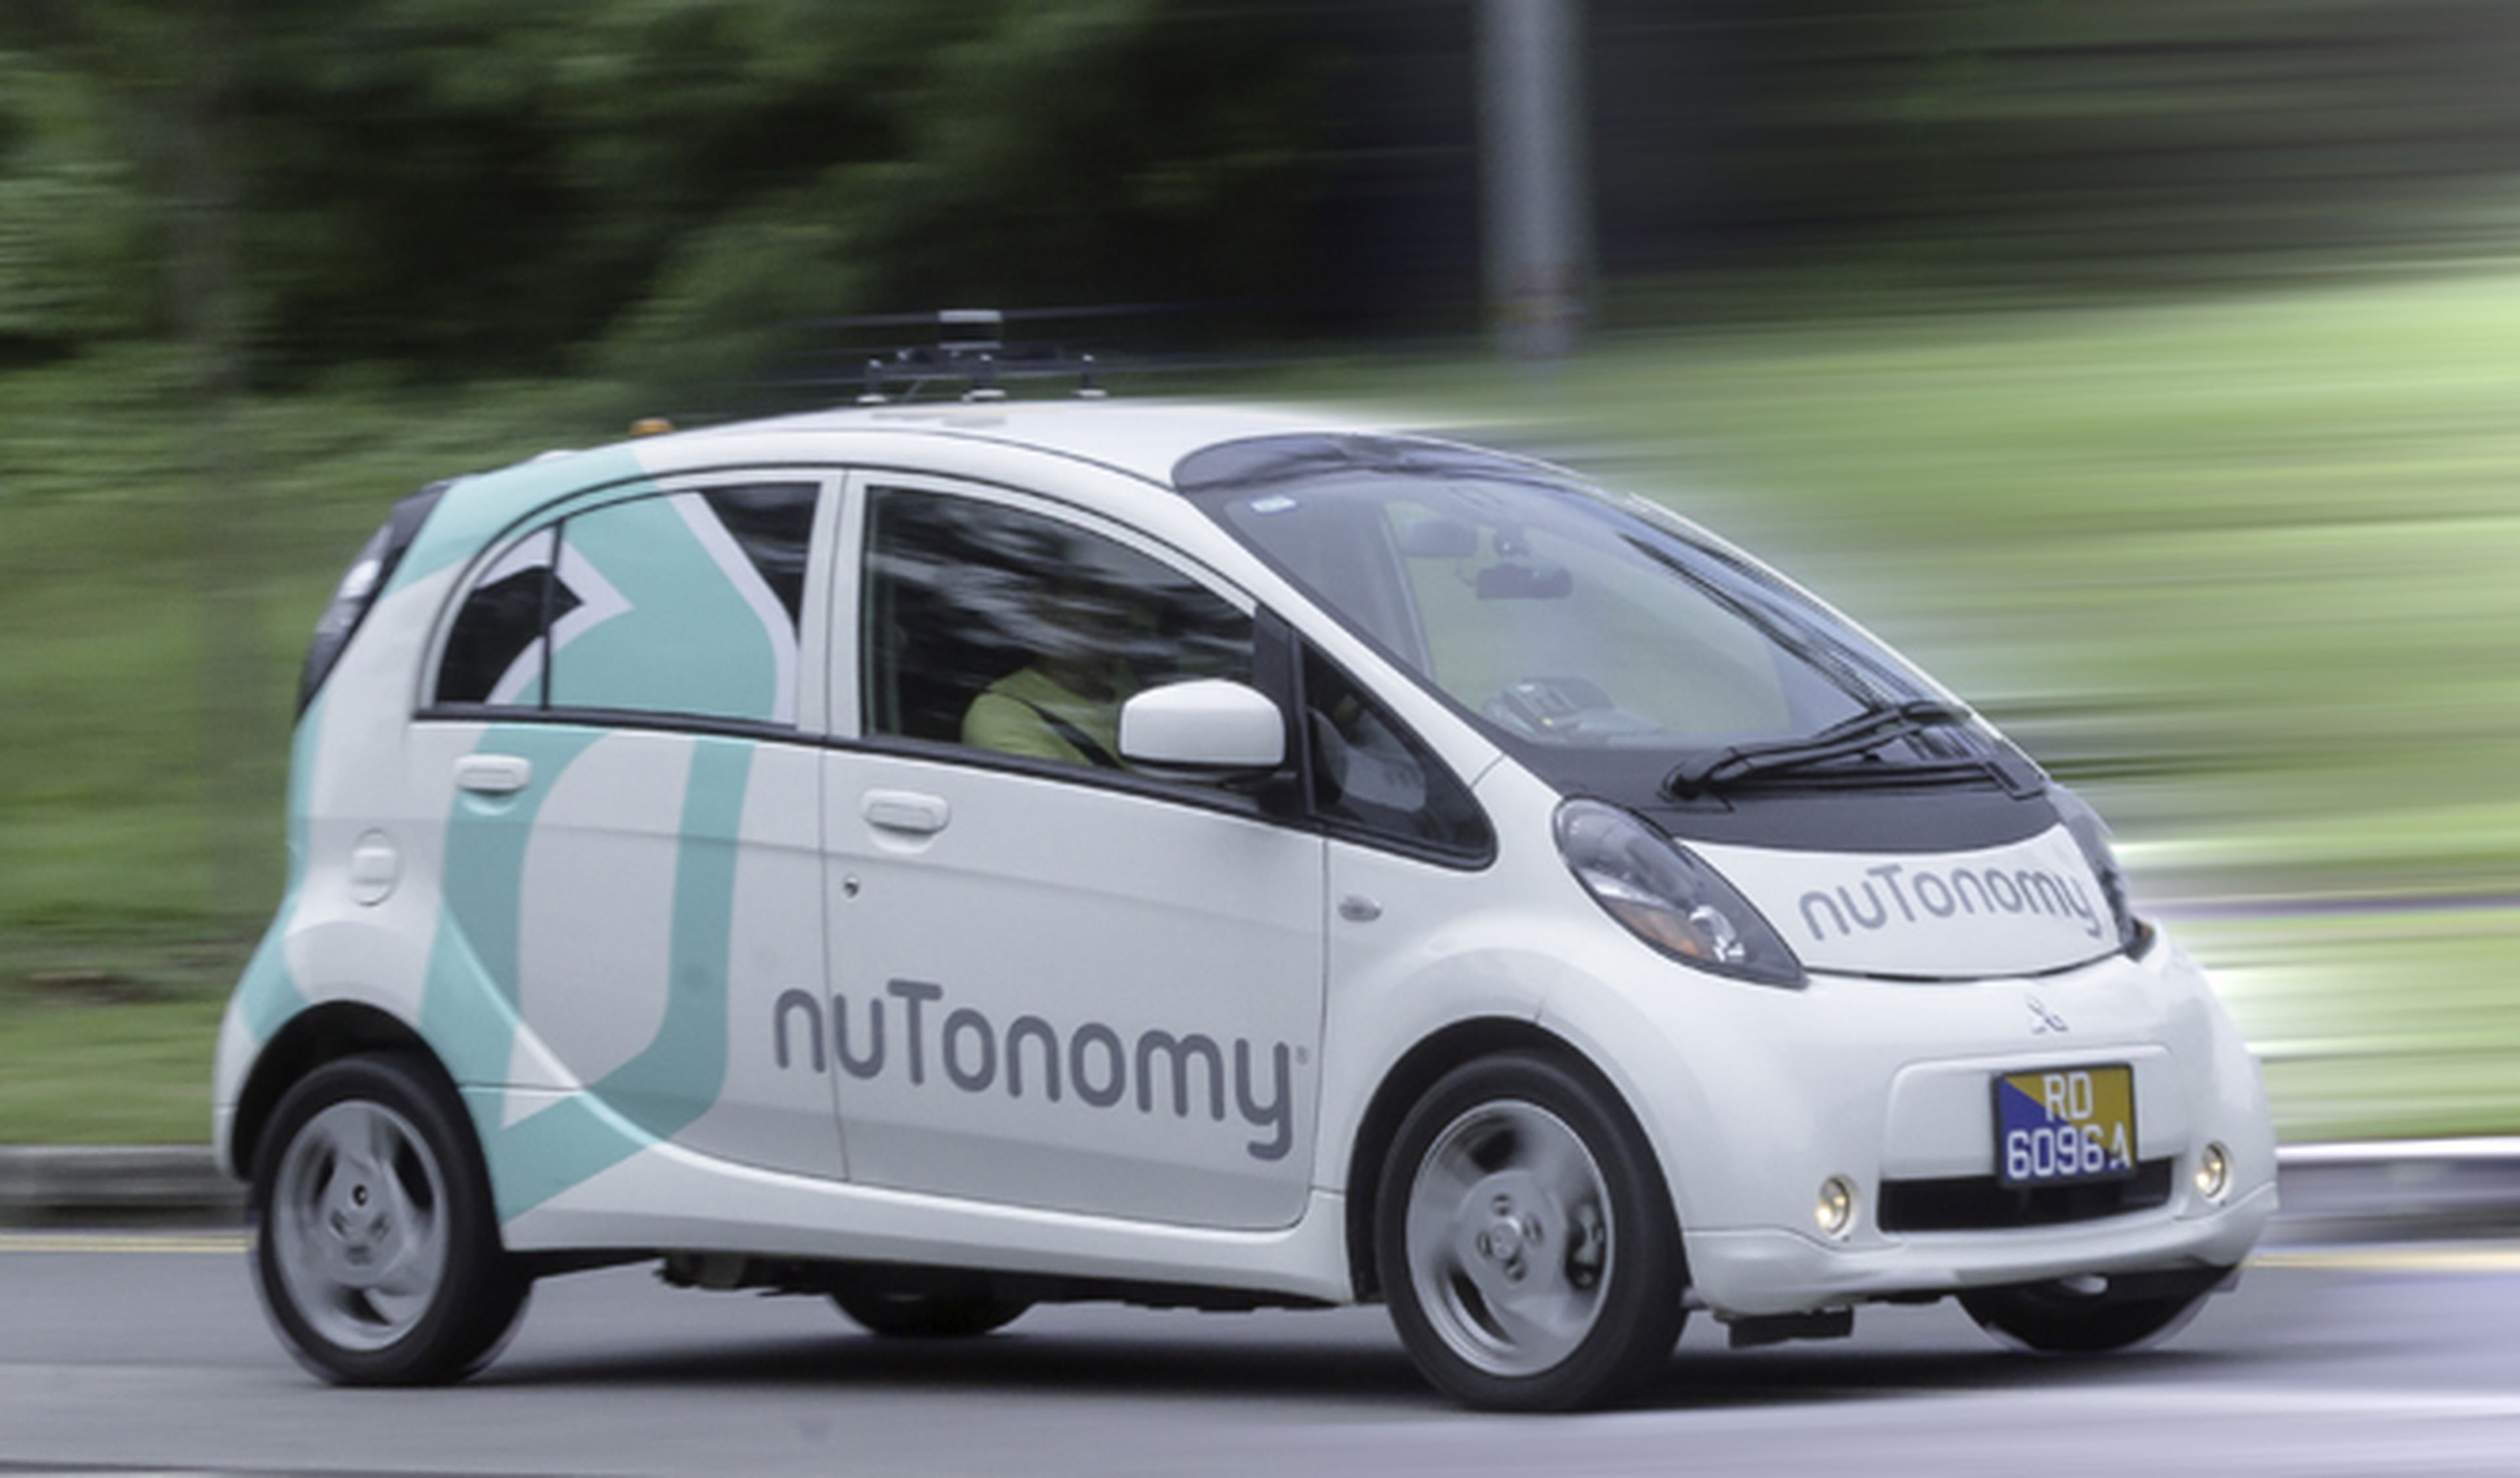 VÍDEO: nuTonomy, el taxi que compite con el coche autónomo de Google